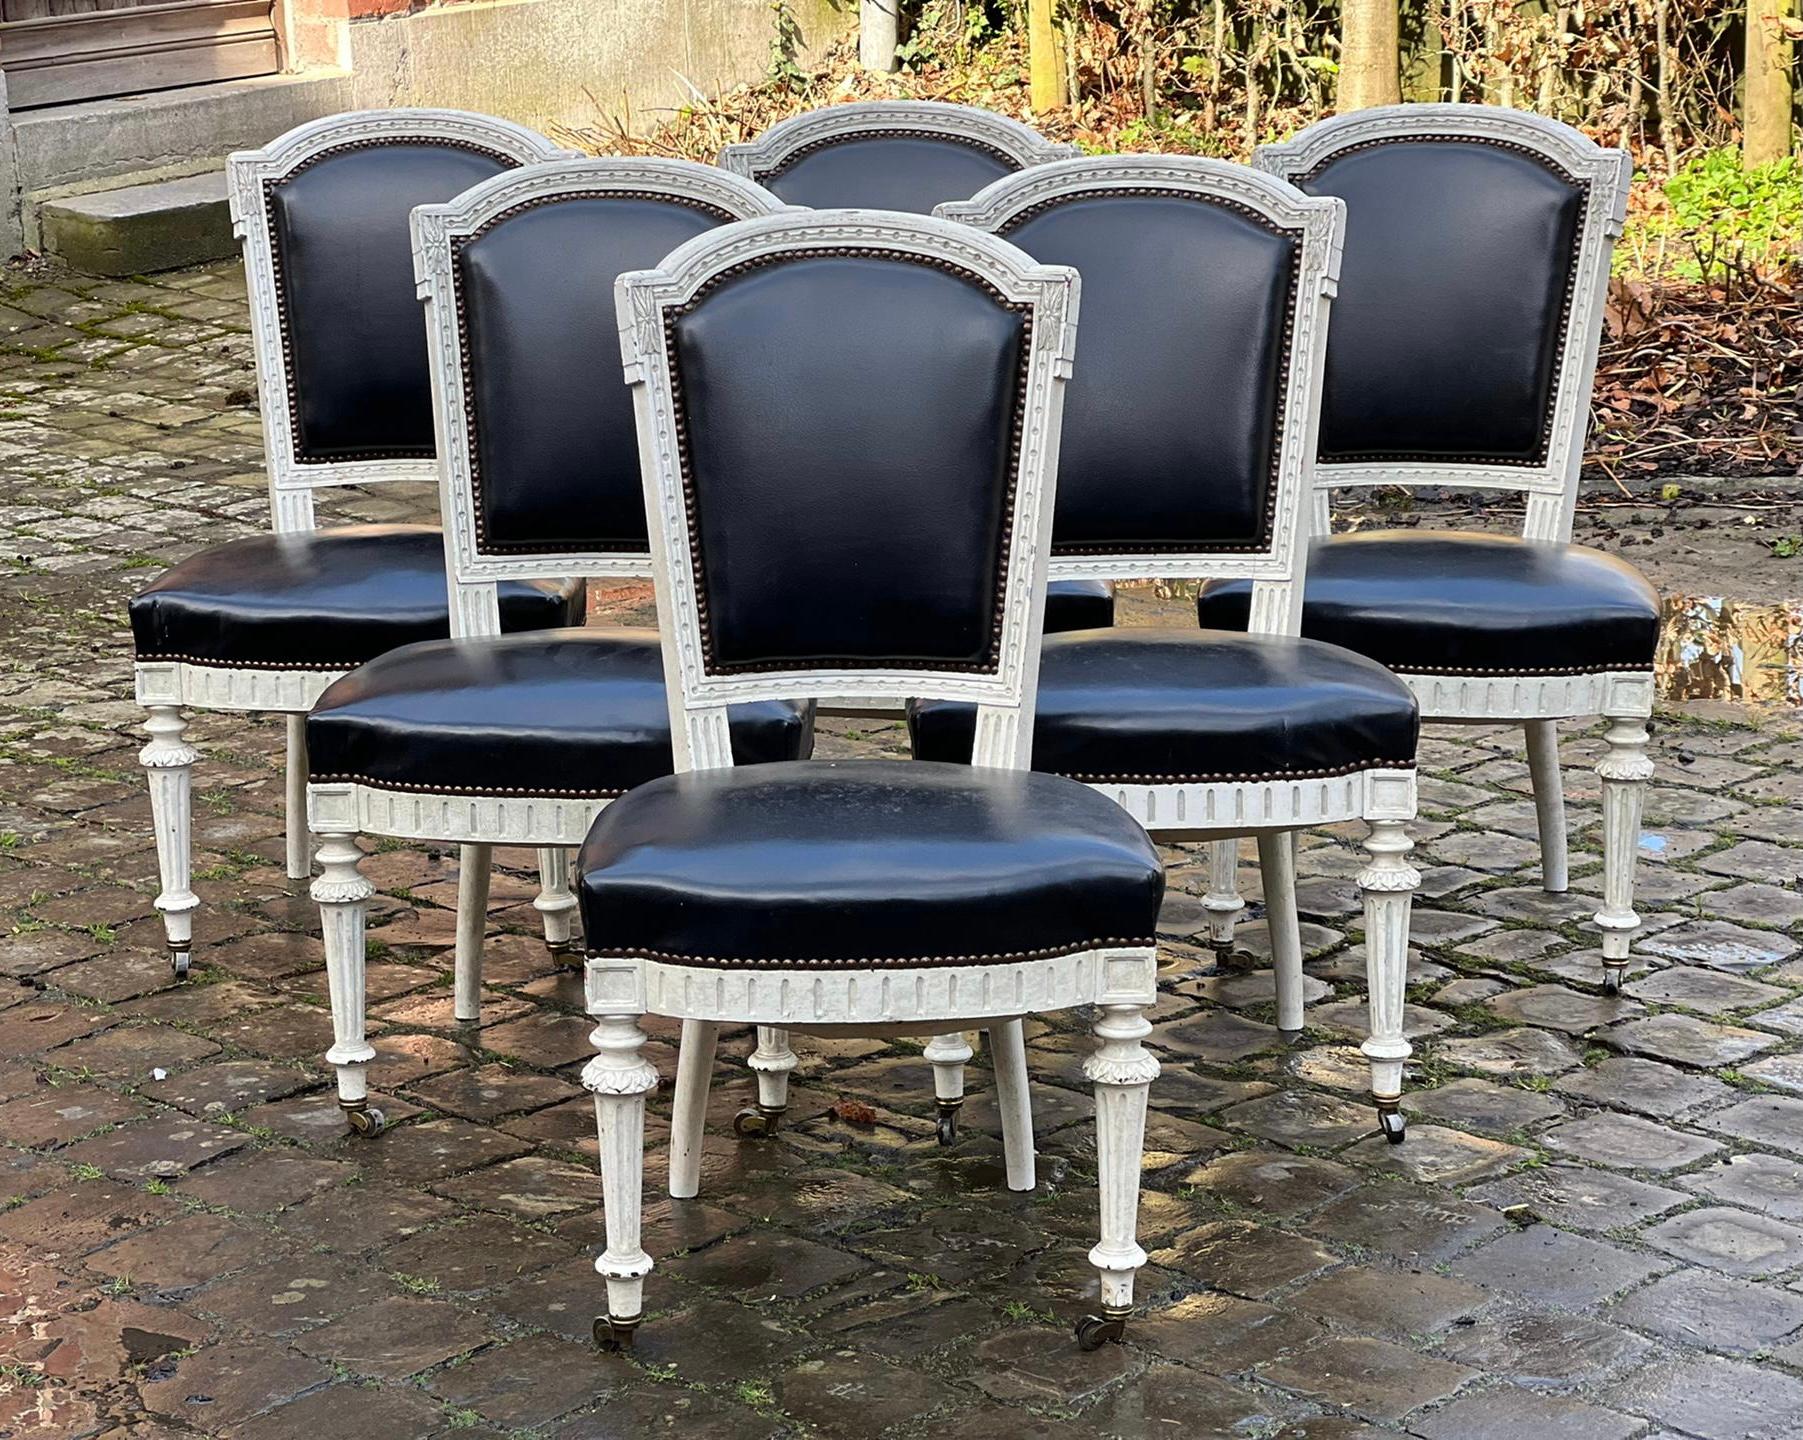 Un ensemble de 6 chaises de salle à manger françaises de superbe qualité provenant d'un appartement à Paris. Finition et patine d'origine, beaux détails et roulettes sur les pieds avant (toujours un signe de qualité). La tapisserie est en excellent